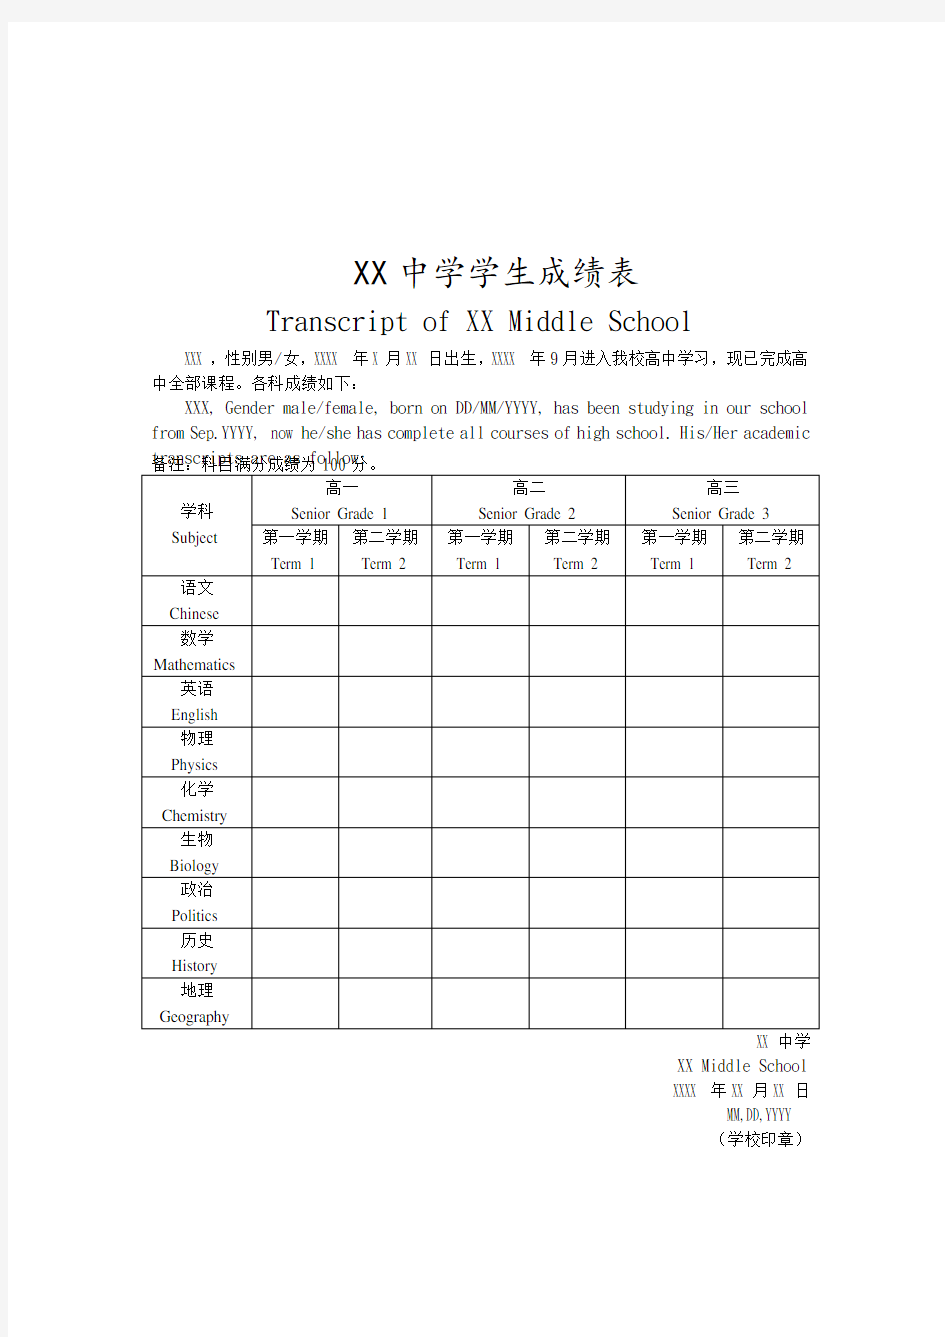 中英文高中成绩单模版(无分数)